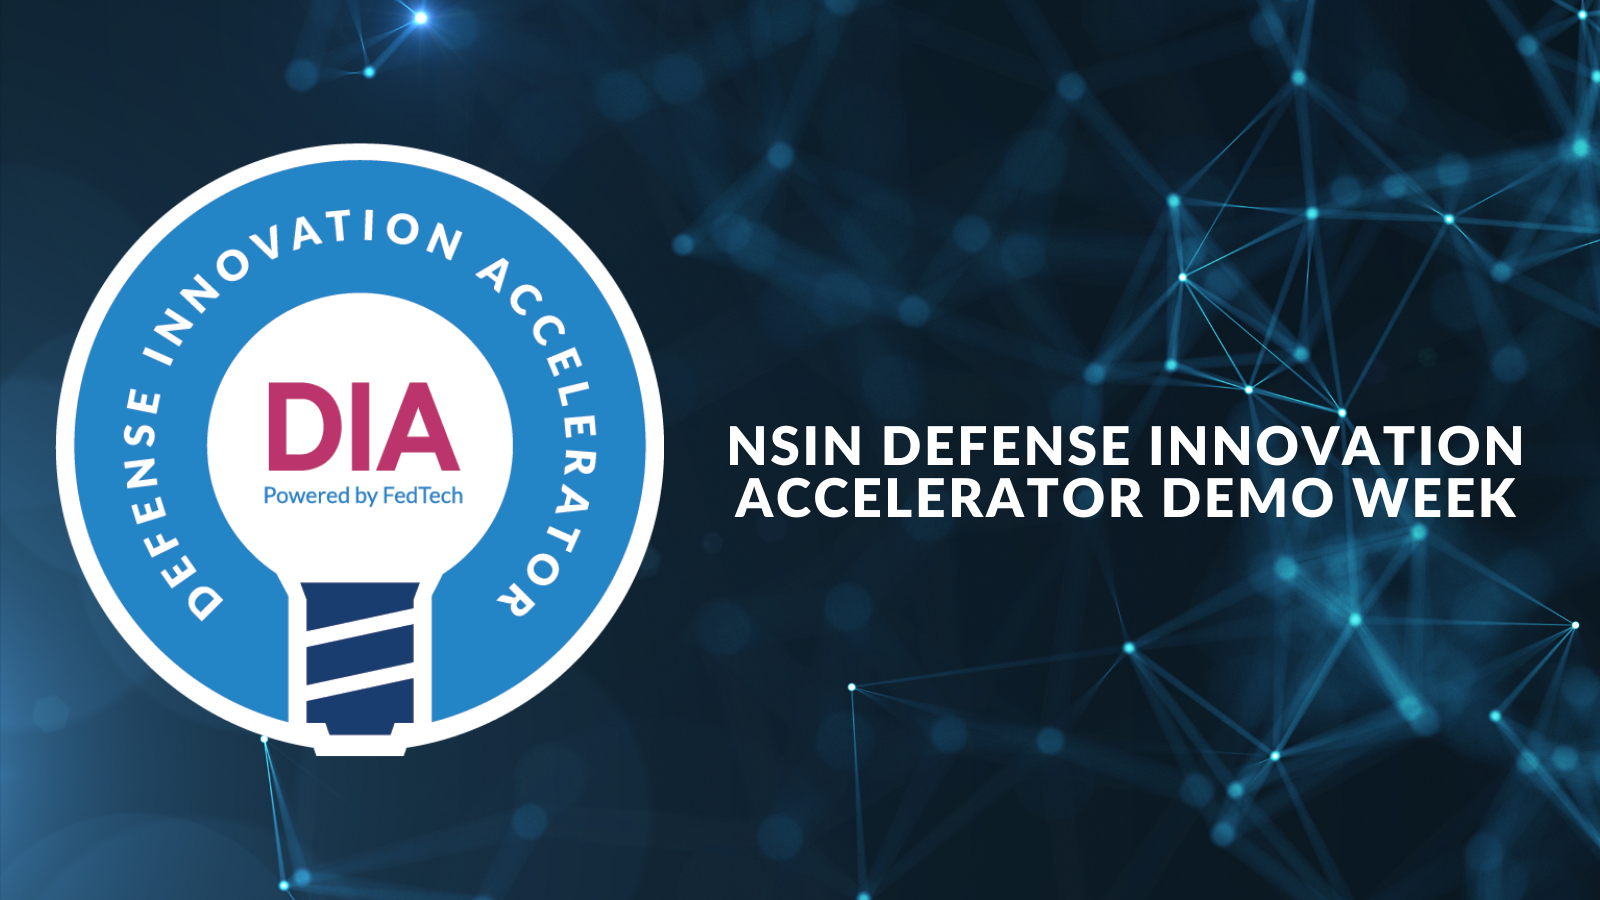 NSIN Defense Innovation Accelerator - December 1 & 3